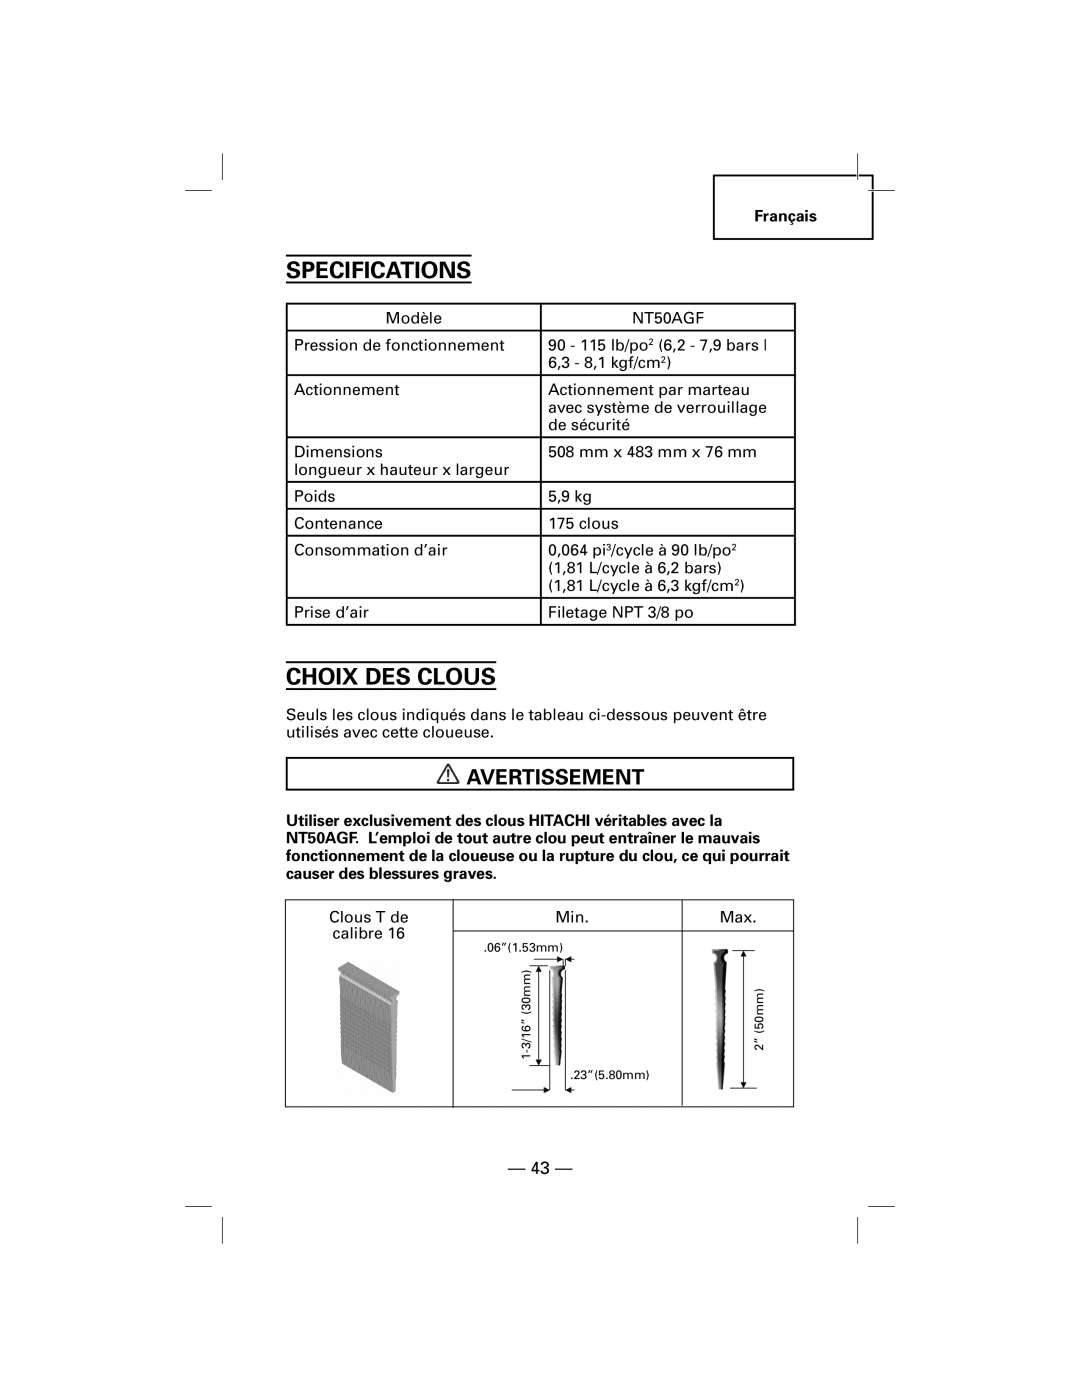 Hitachi NT50AGF manual Choix Des Clous, Avertissement, Specifications 